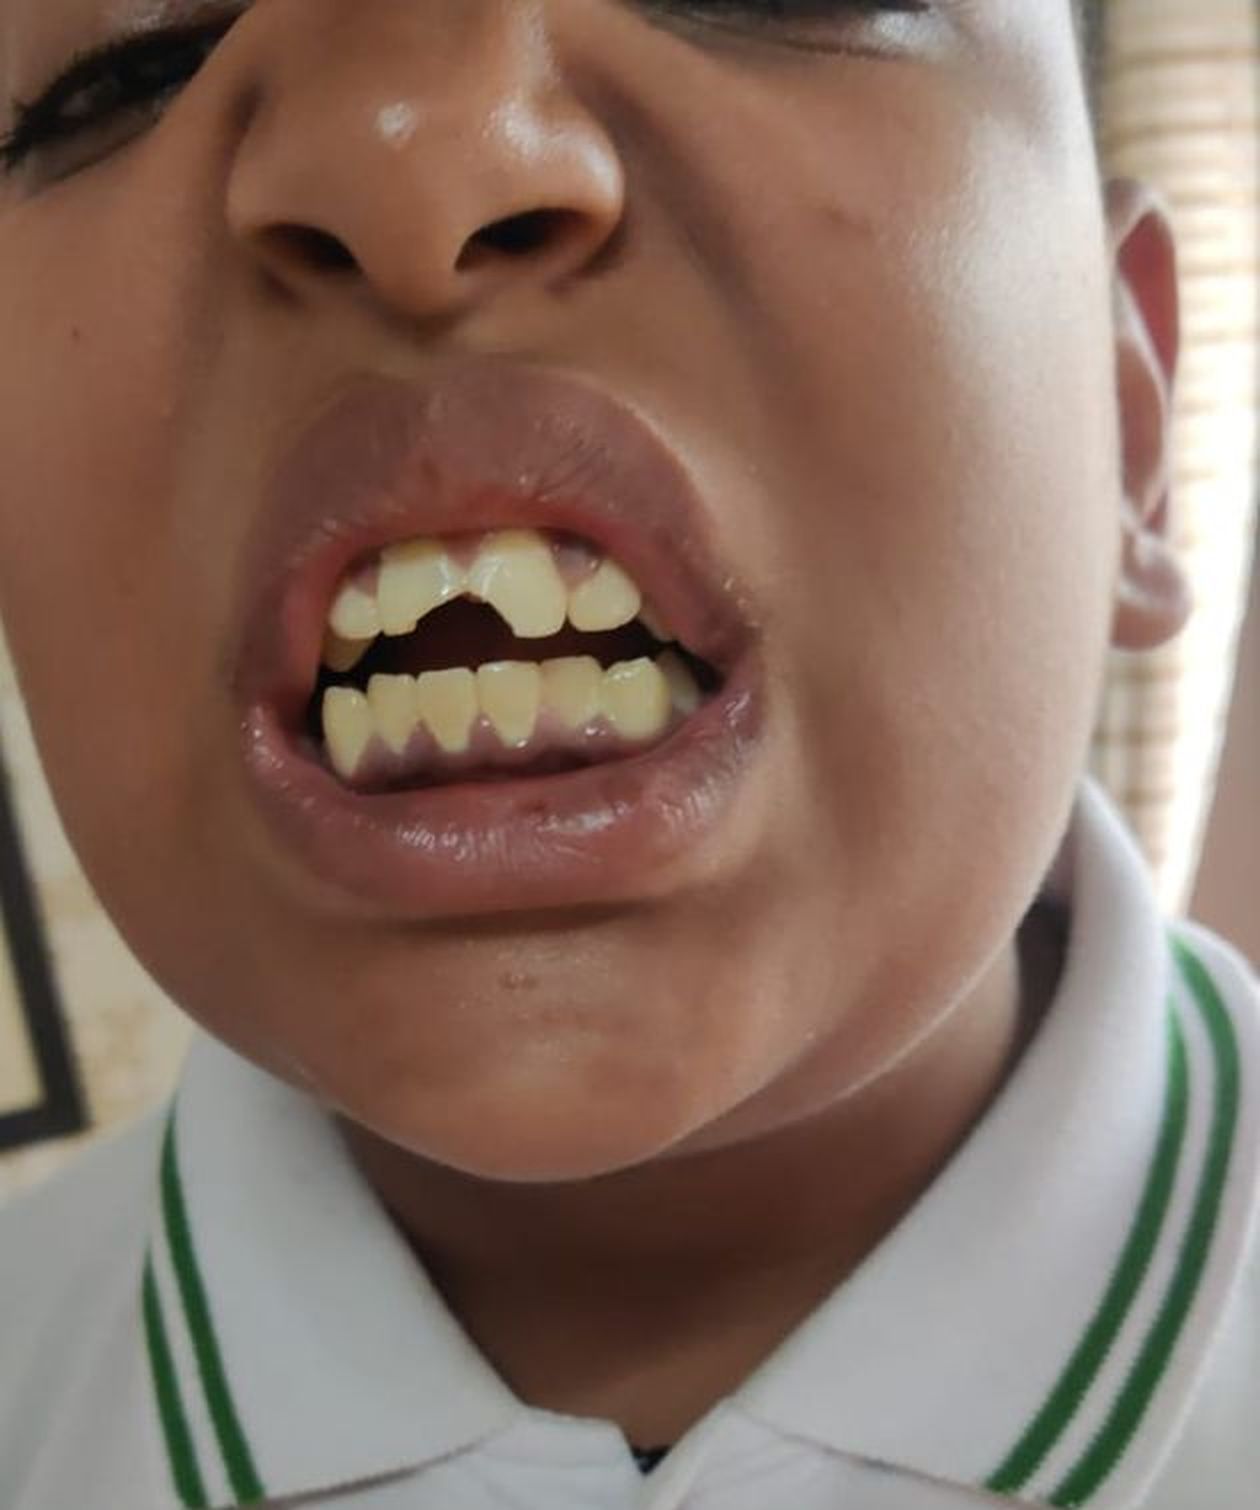 सवाल का जवाब पहले देने पर शिक्षक ने पीटा, बच्चे के दांत टूटे, केस दर्ज